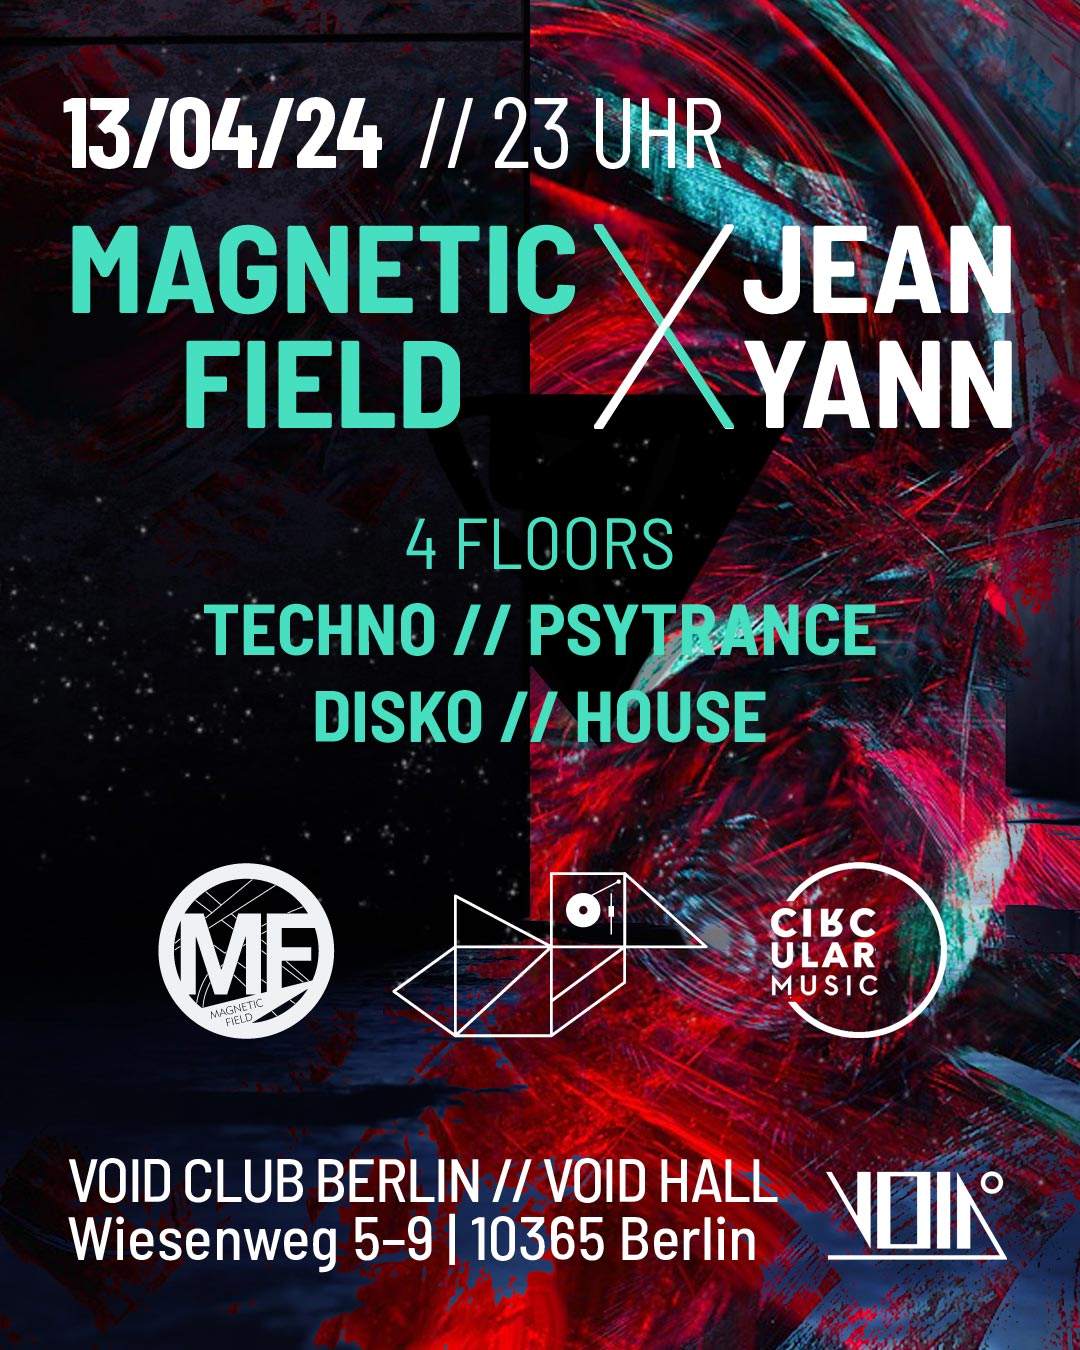 Magnetic Field Berlin Feat. Jean Yann on 4 floors (Psytrance, Techno, House, Disko) - フライヤー表